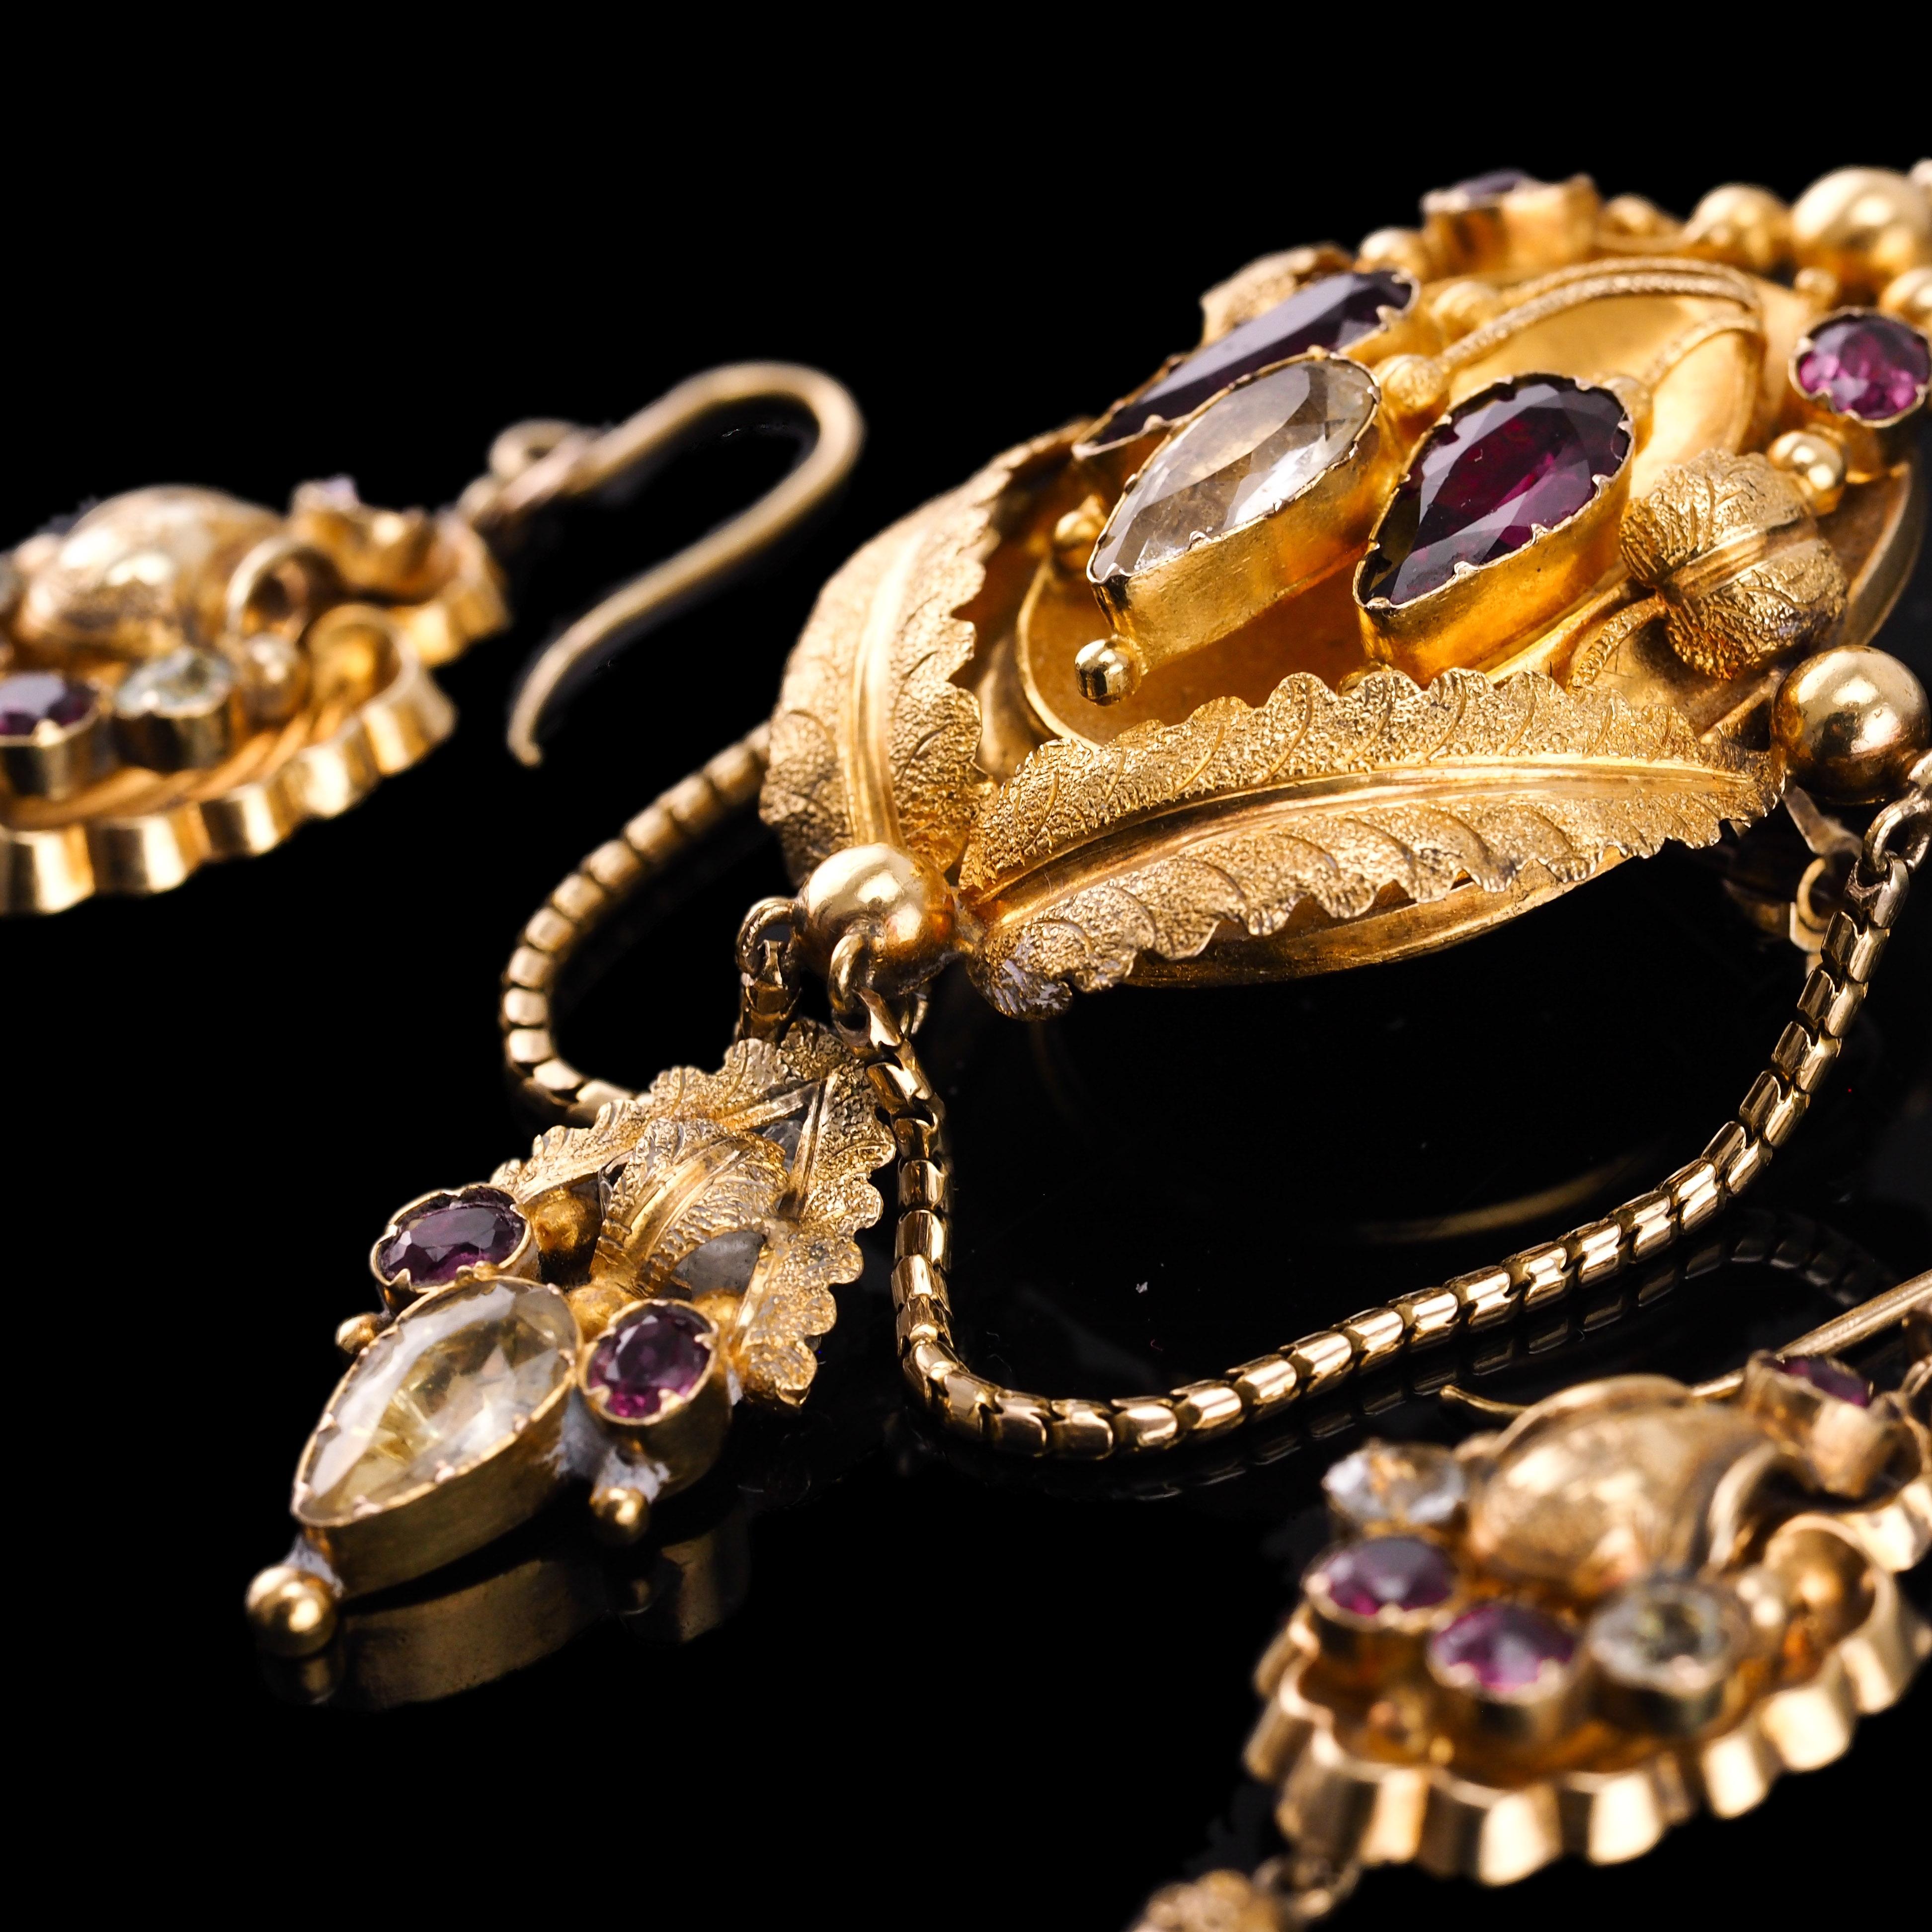 Antique 18K Gold Brooch Pendant & Earrings Garnet & Chrysoberyl - c.1870 For Sale 4